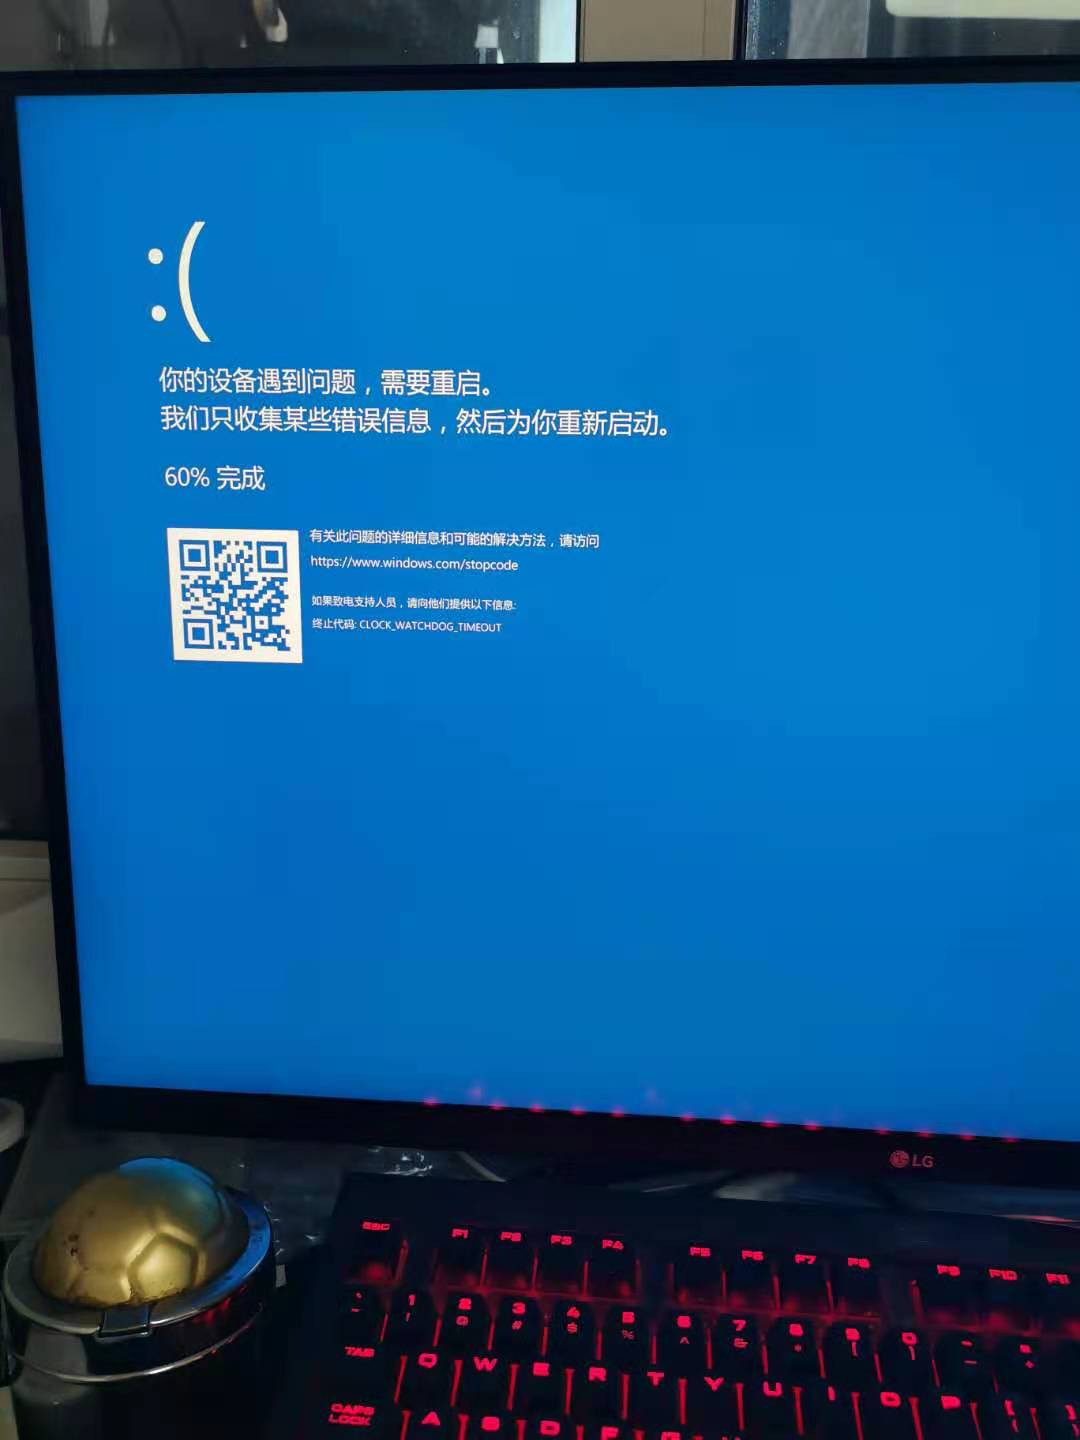 电脑频繁出现蓝屏 统一错误代码 Microsoft Community